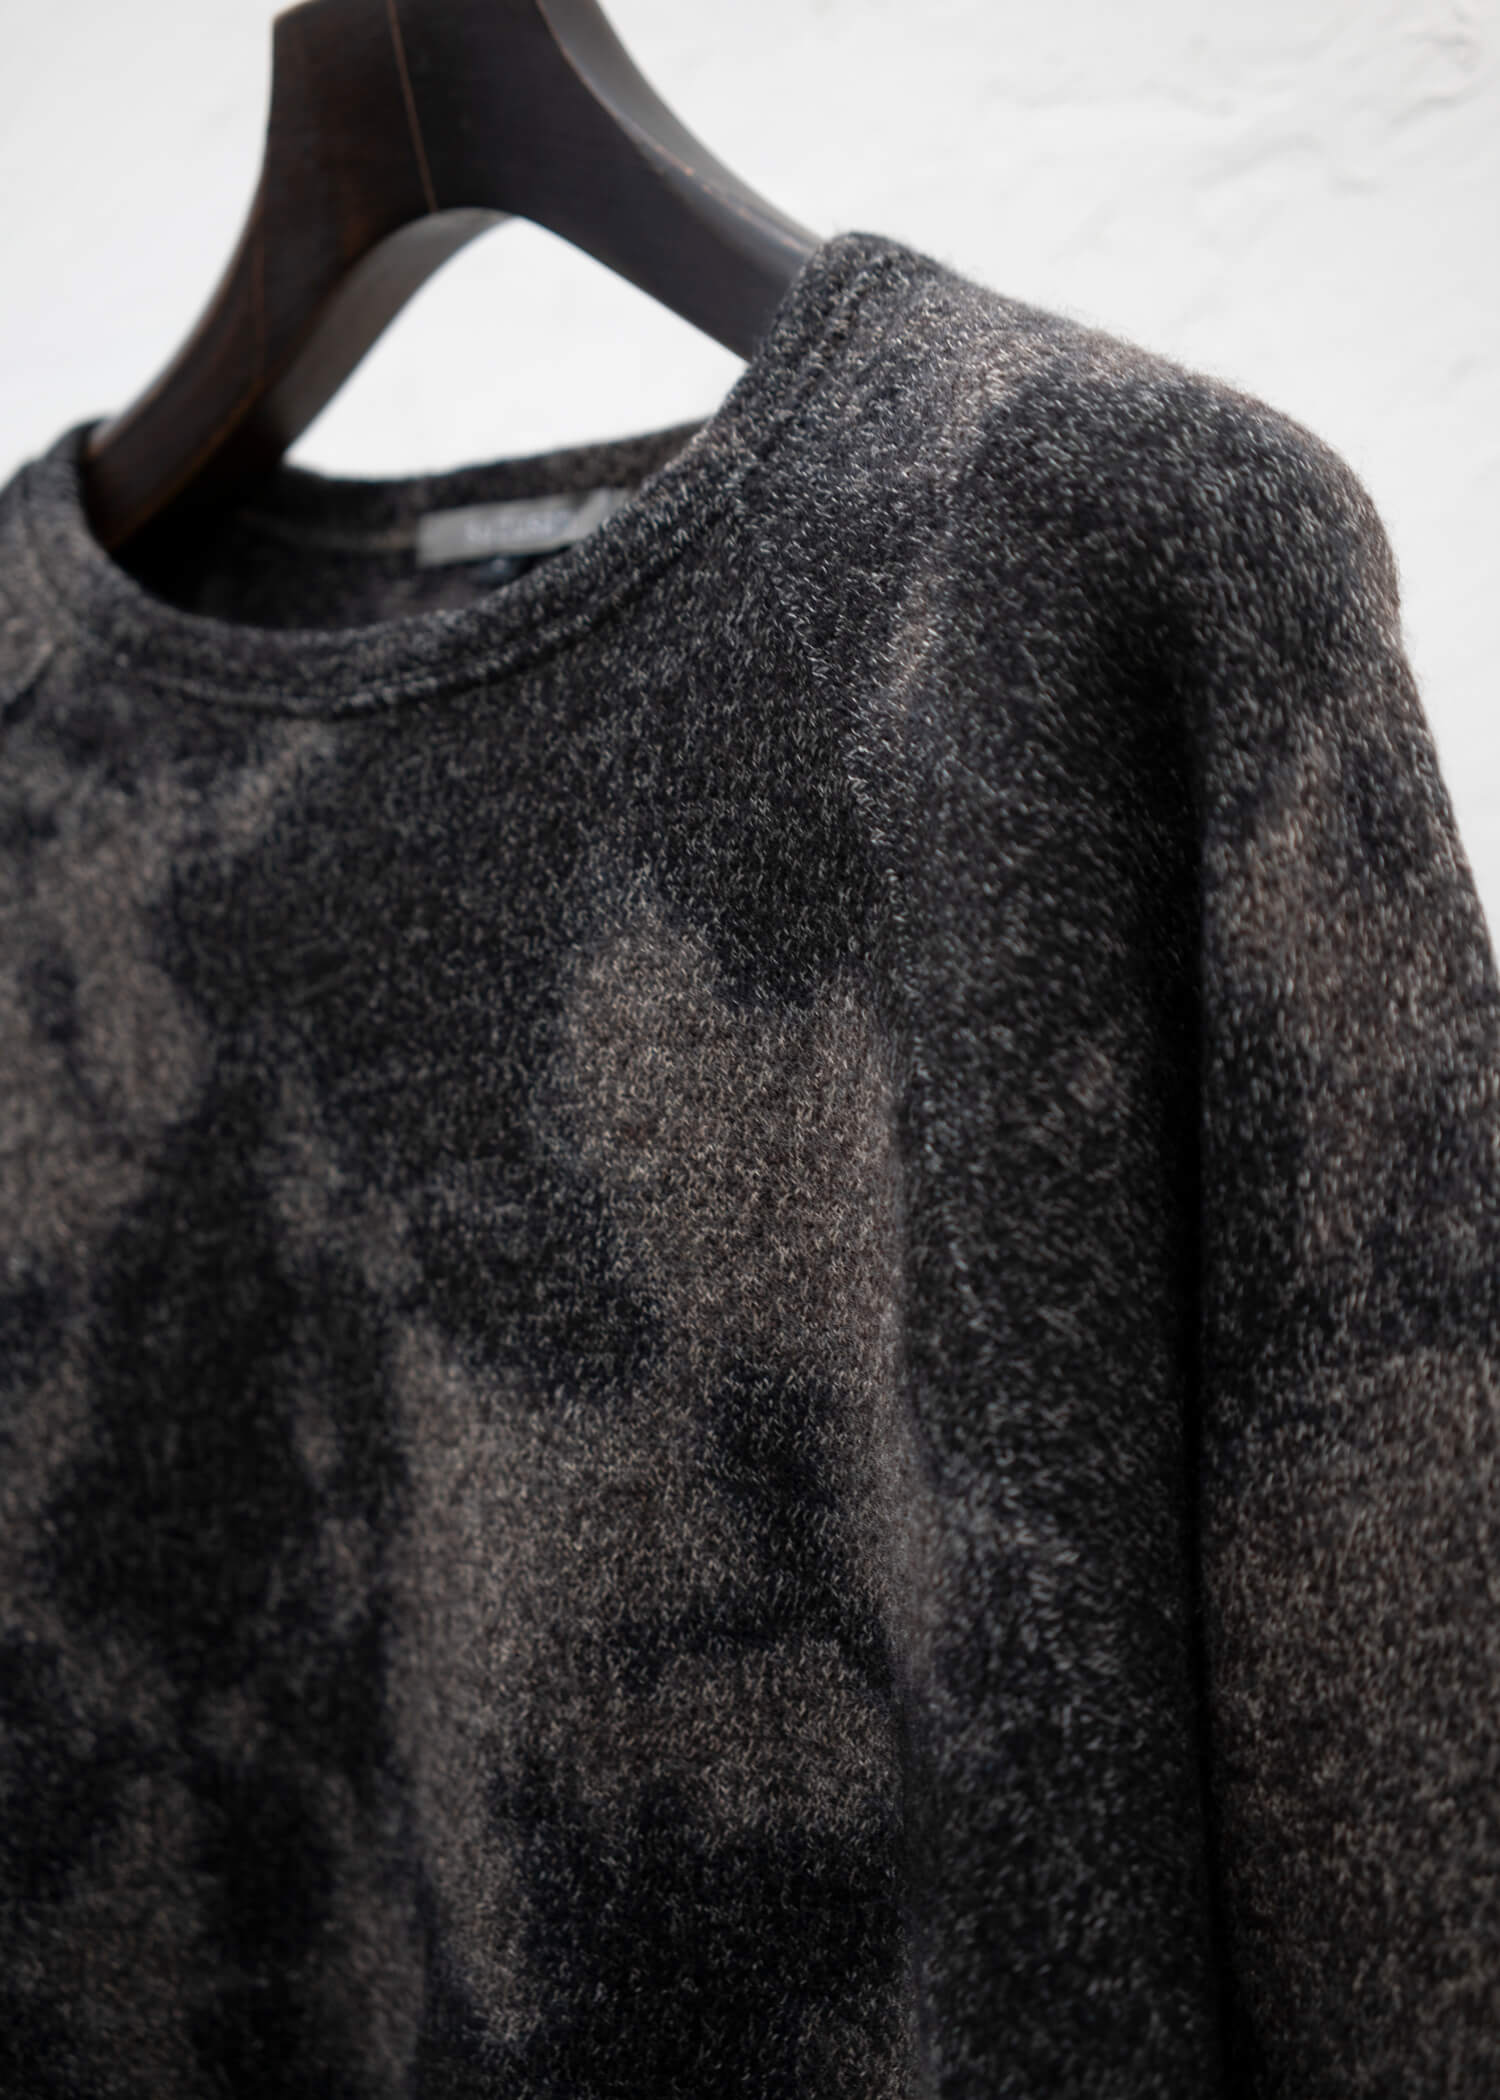 SUZUSAN Wool Cotton Jersey Crew Neck Pullover(Madara Shibori) Black - Muddy Br own